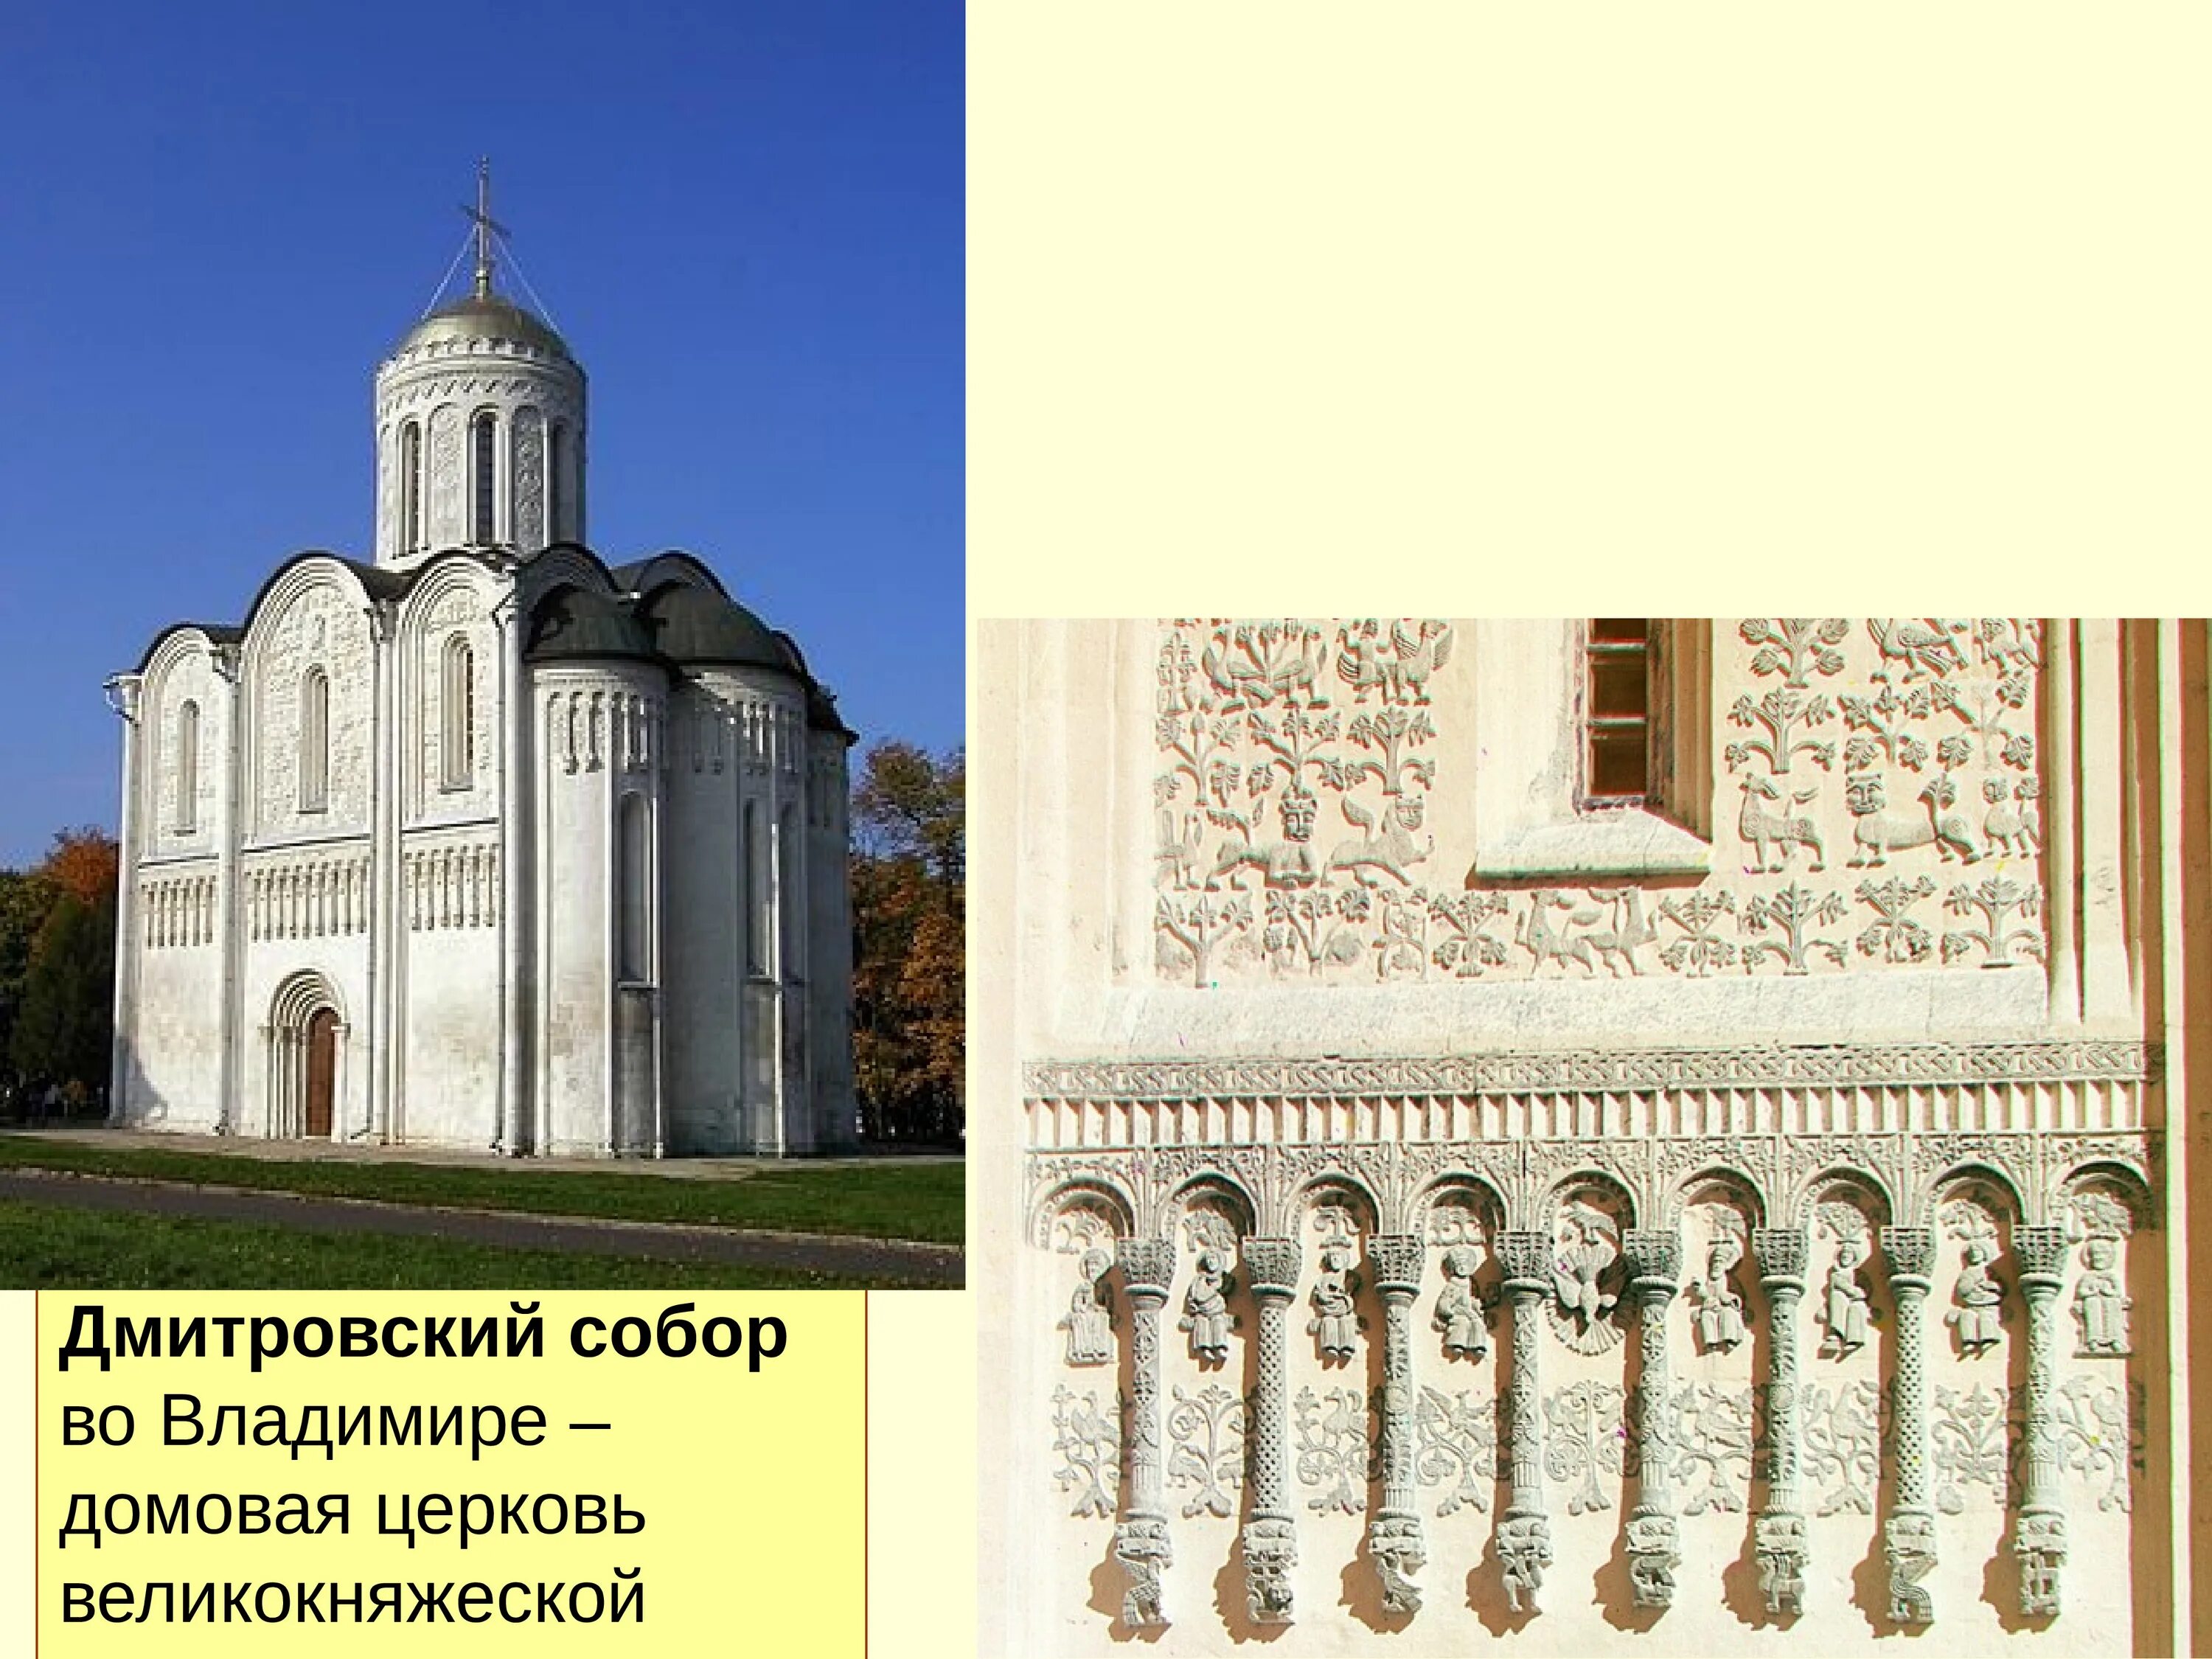 Памятники 12 века на руси